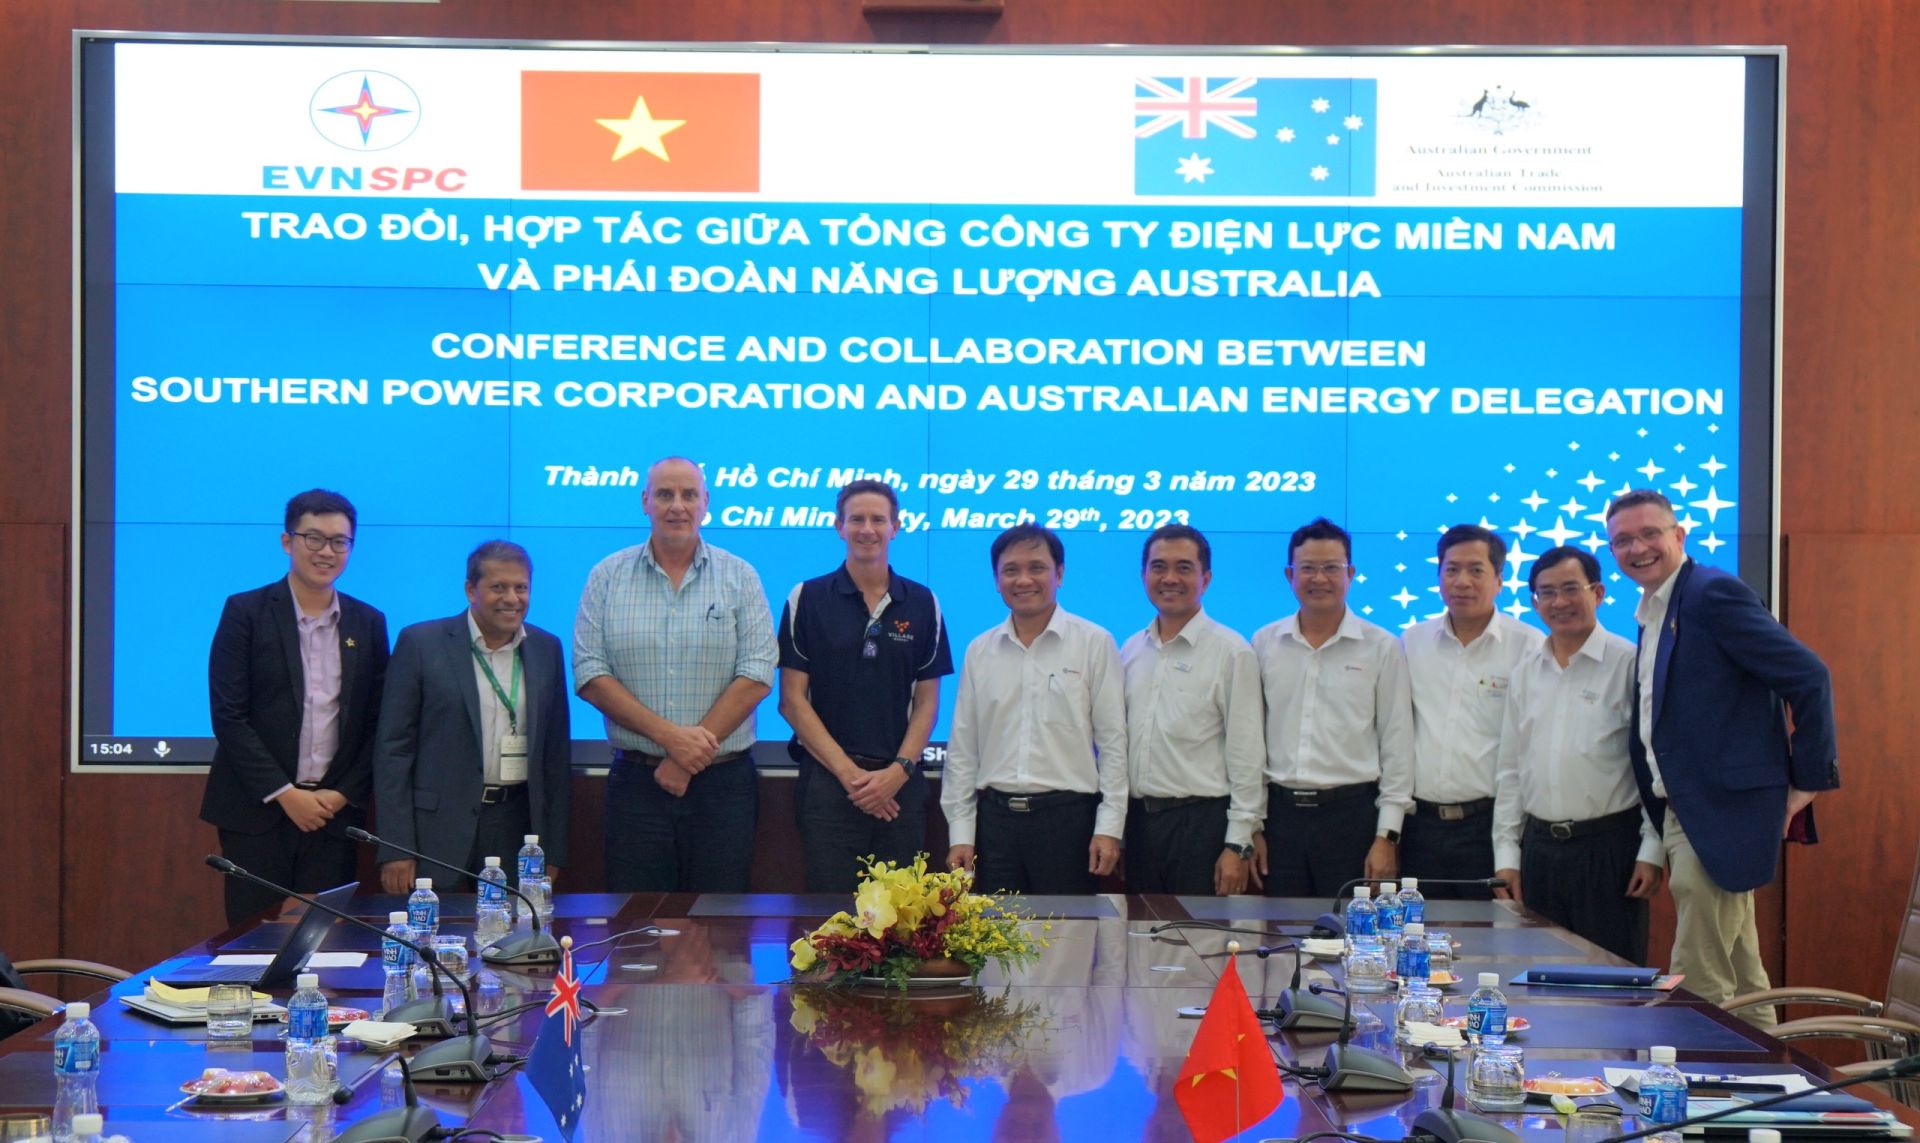 Phái đoàn năng lượng Australia chụp ảnh lưu niệm cùng lãnh đạo EVNSPC